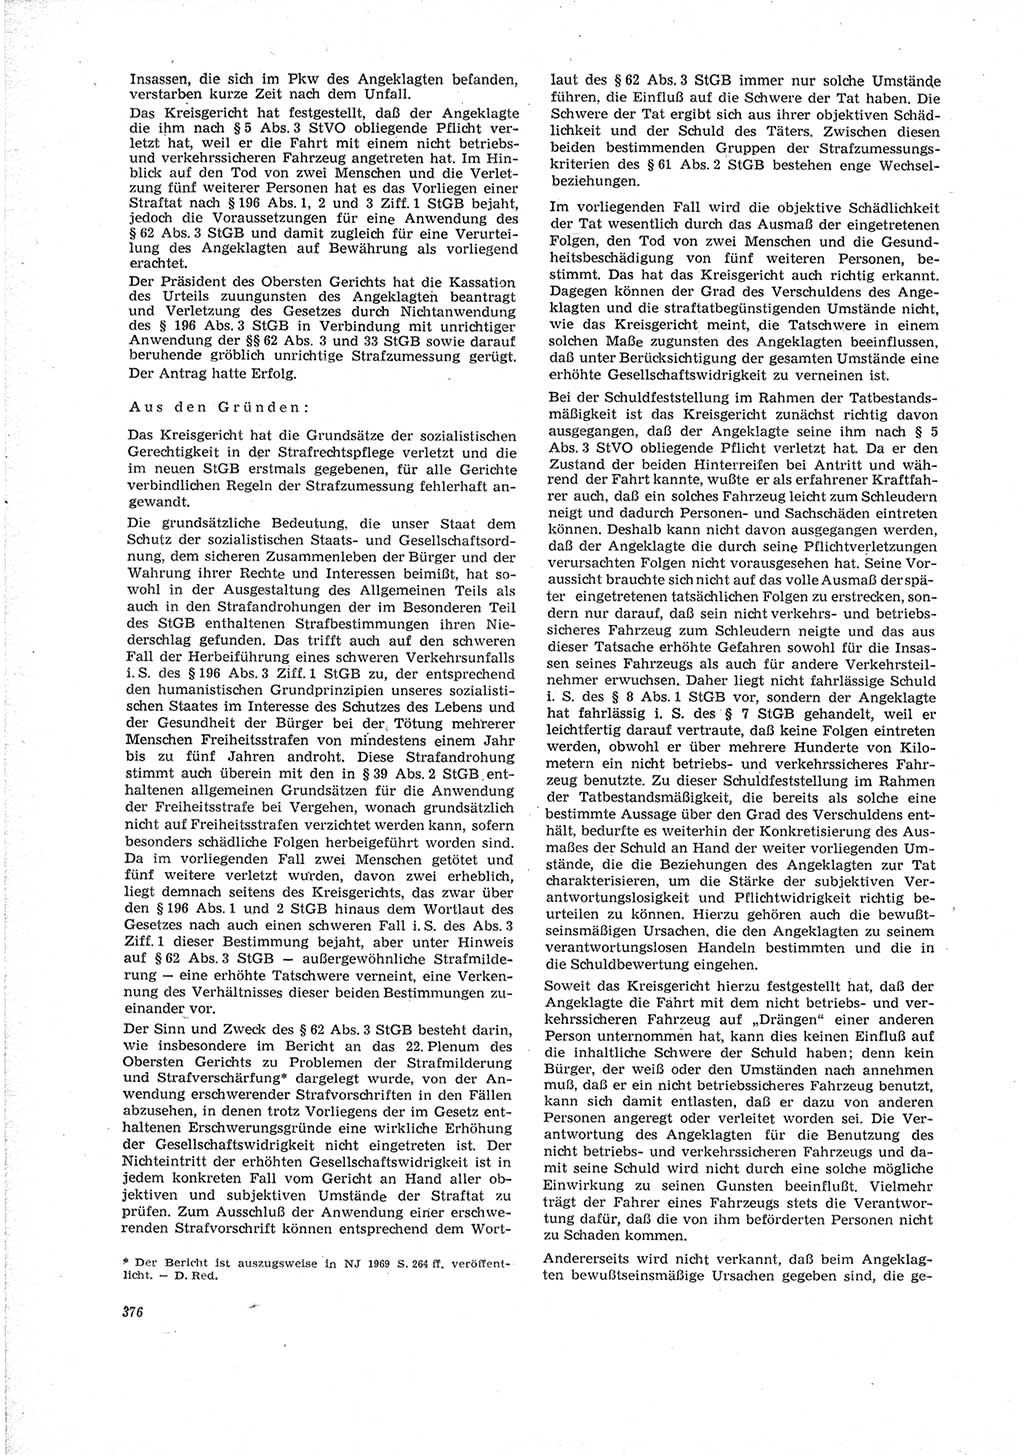 Neue Justiz (NJ), Zeitschrift für Recht und Rechtswissenschaft [Deutsche Demokratische Republik (DDR)], 23. Jahrgang 1969, Seite 376 (NJ DDR 1969, S. 376)